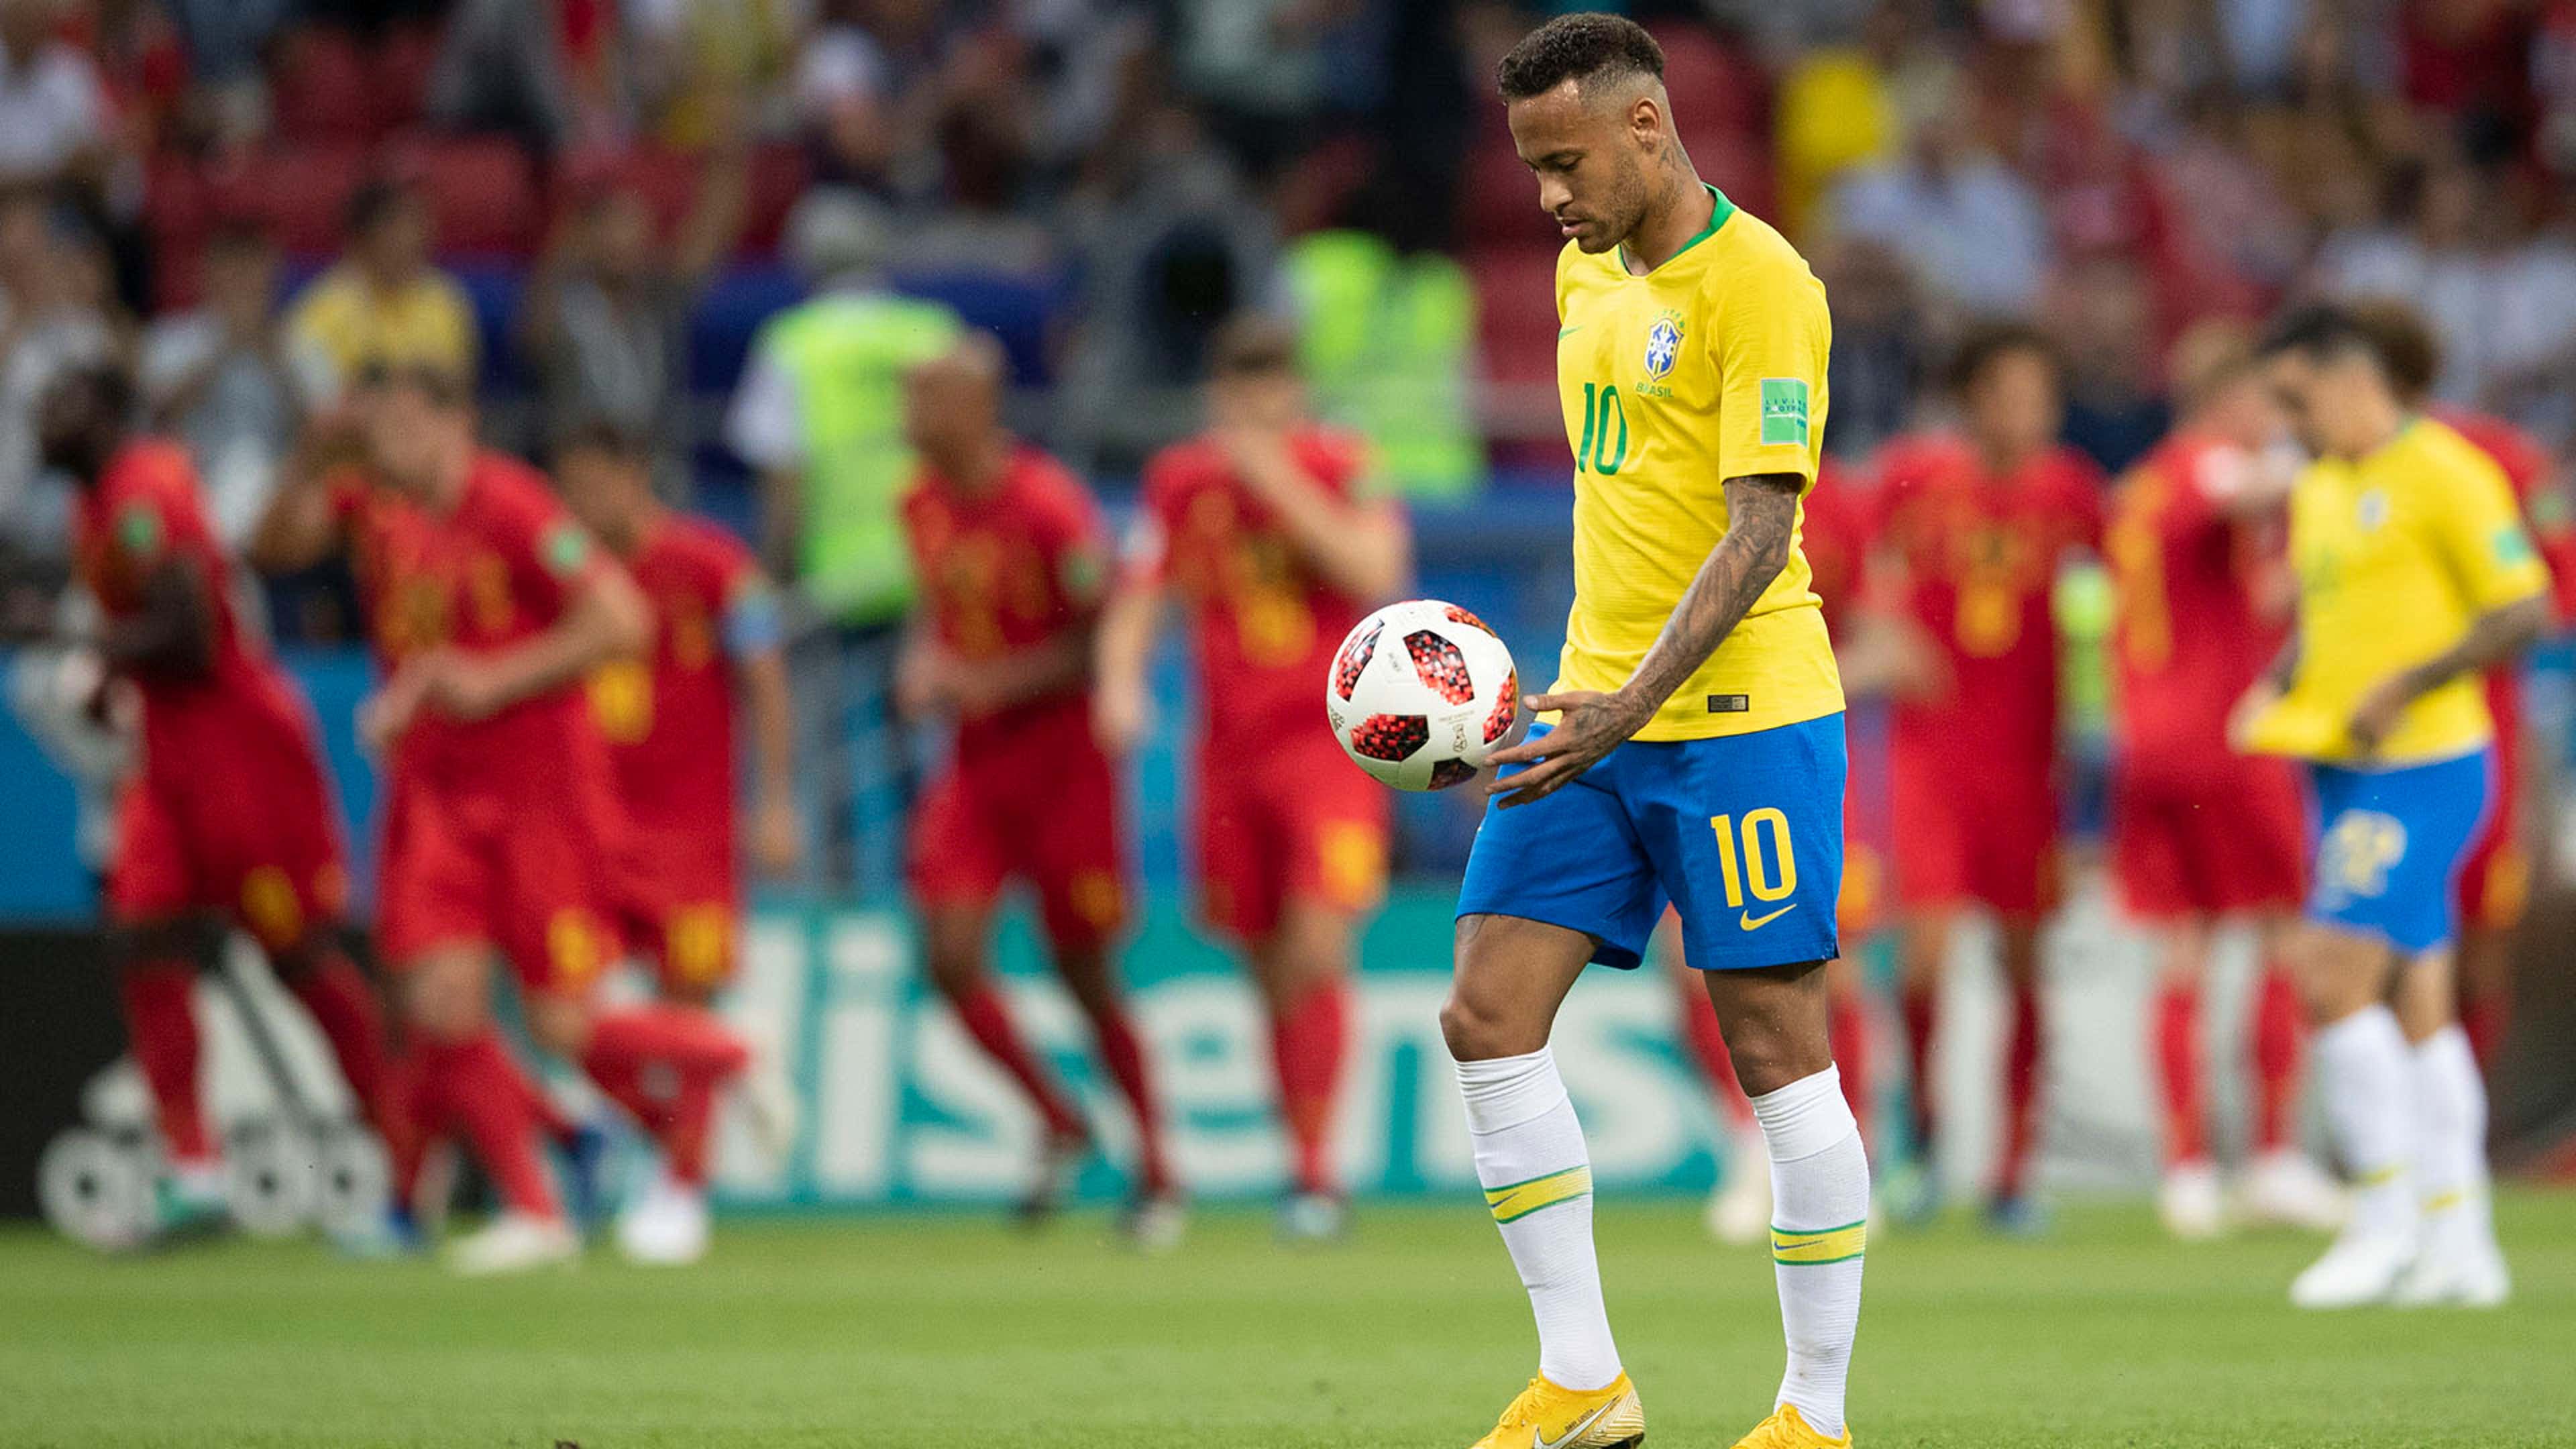 Atuações: confira o desempenho dos jogadores do Brasil contra a